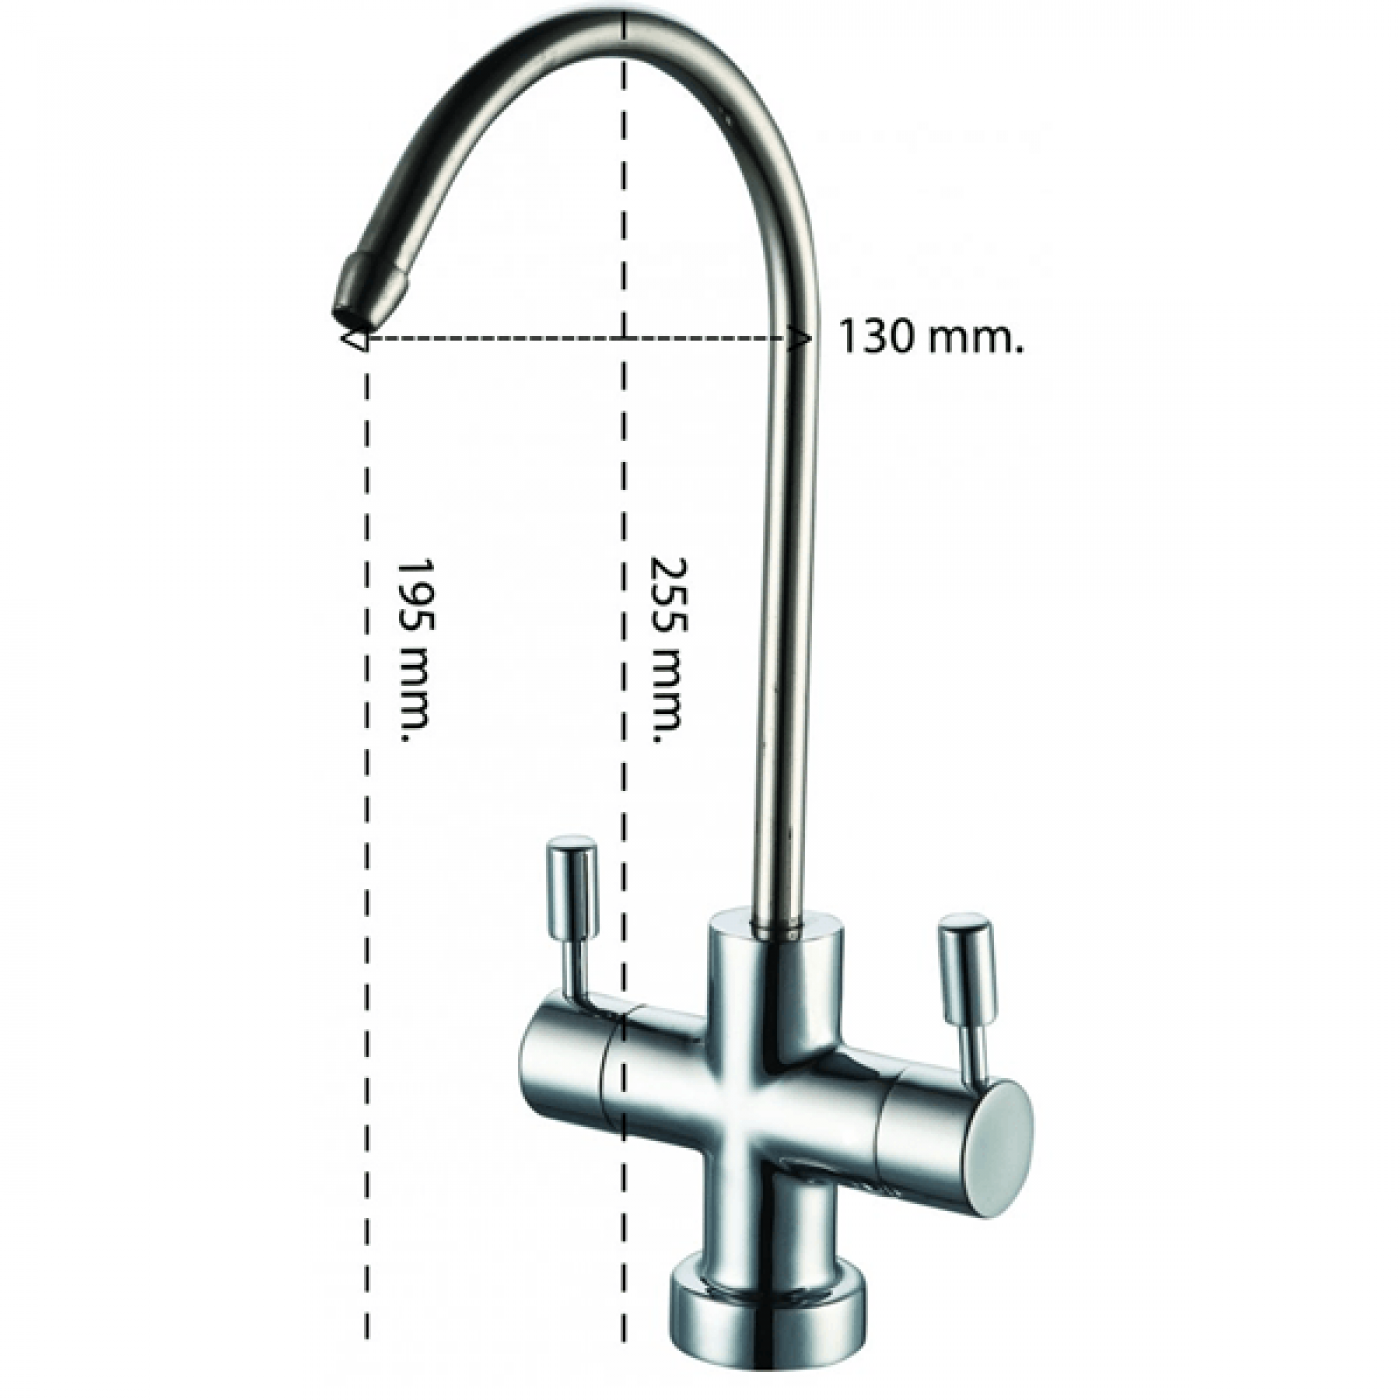 2 Filtri acqua per miscelatori e rubinetti attacco avvitabile e univer